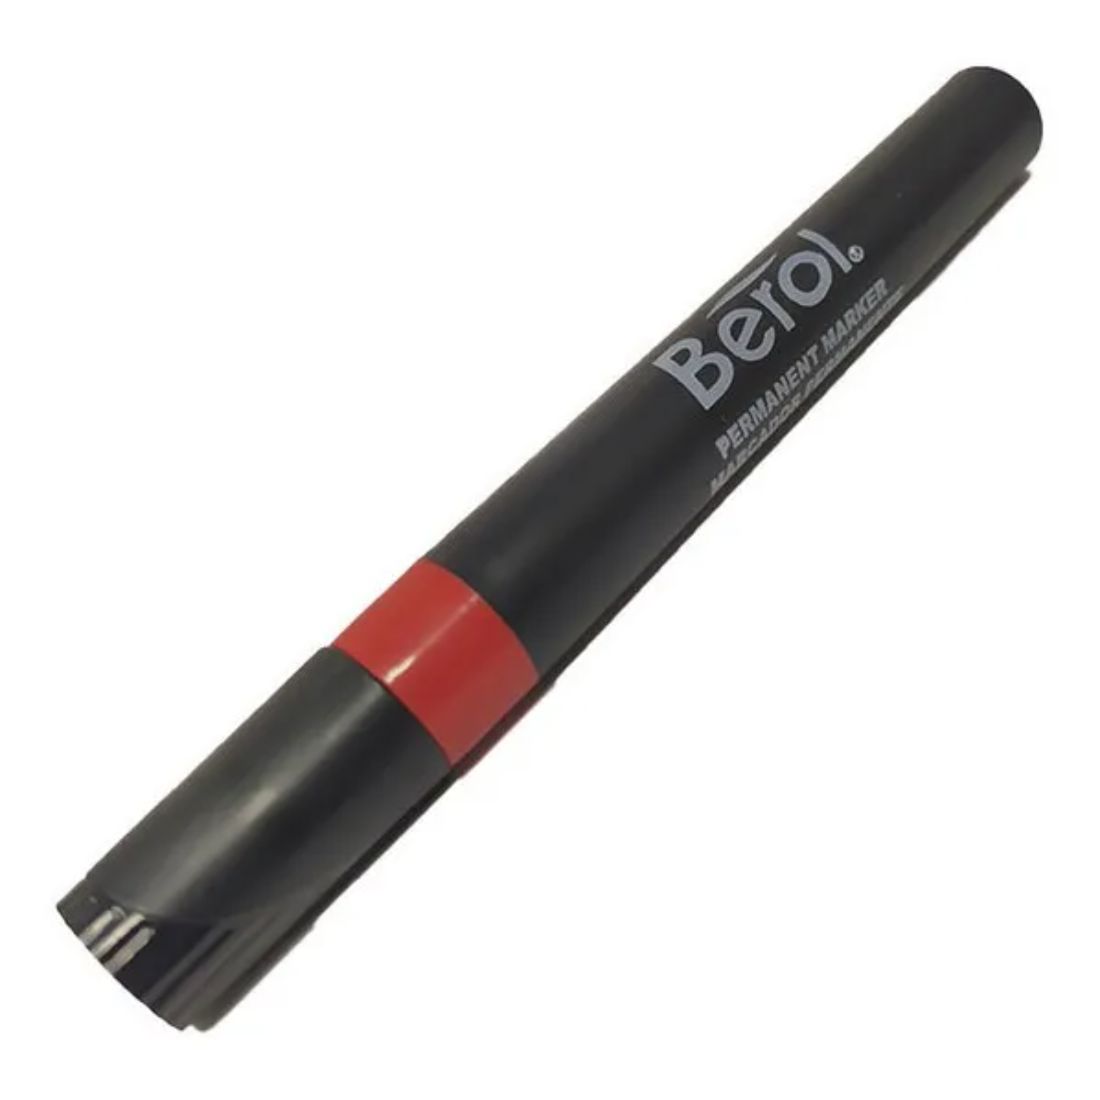 UNV07052 – Color: Rojo – Rotulador permanente universal con punta de cincel.